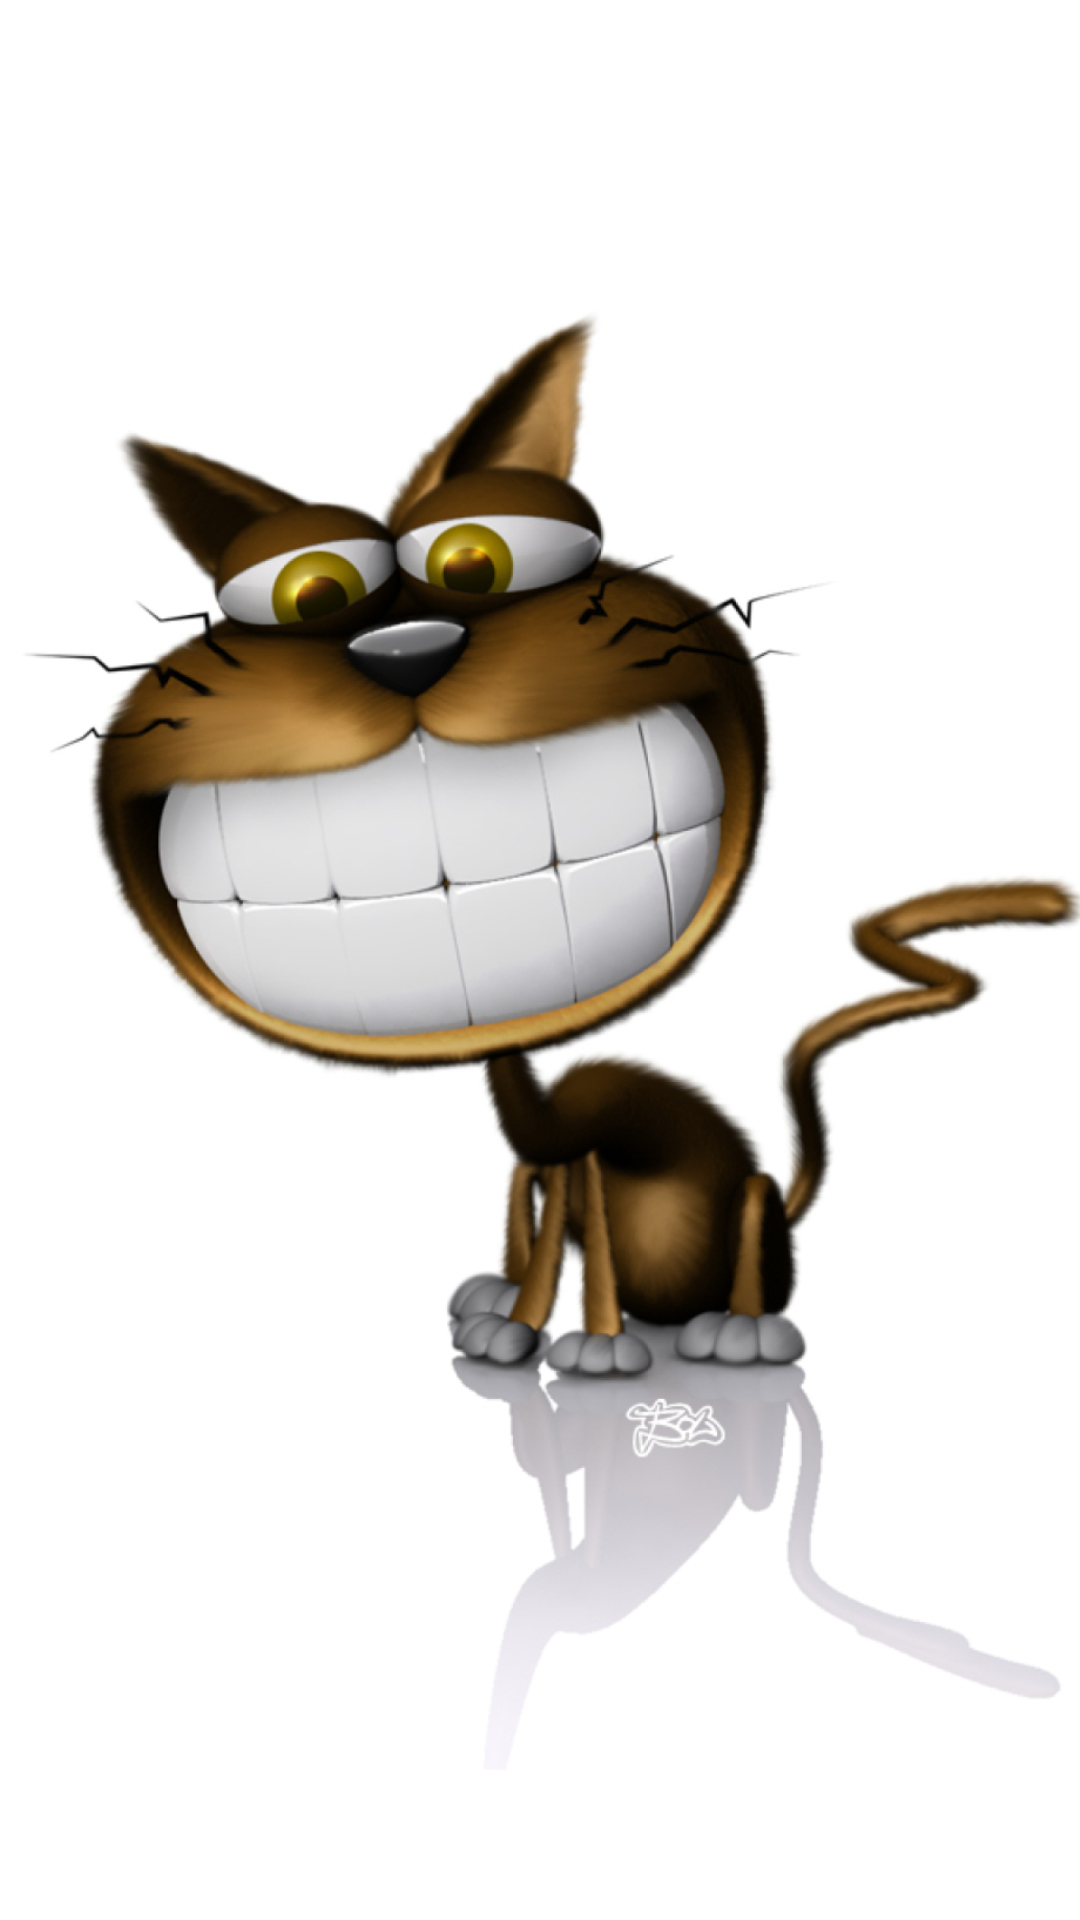 3D Smiling Cat wallpaper 1080x1920